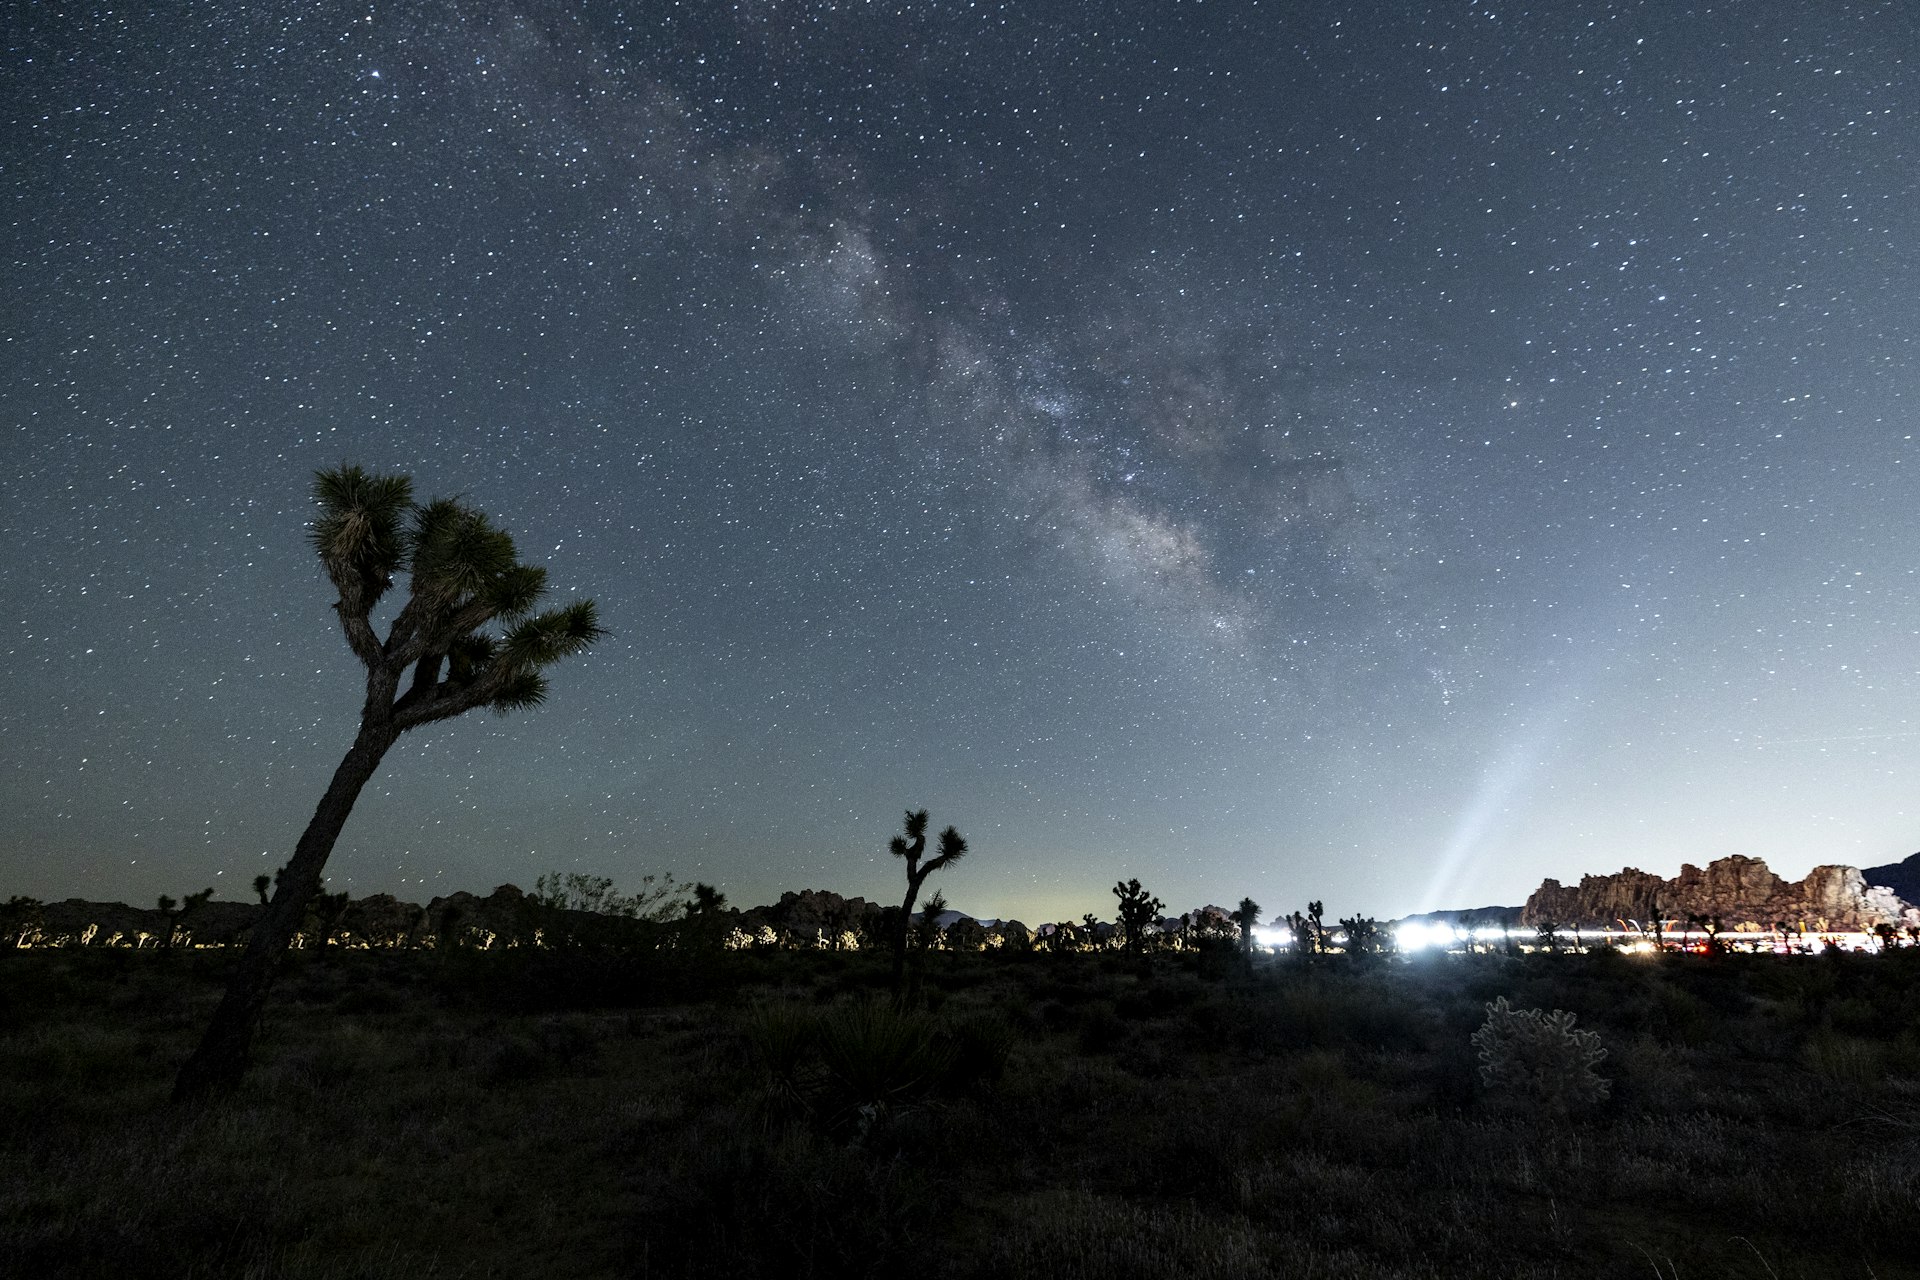 The Milky Way shines over a Joshua tree in Joshua Tree National Park, California, USA